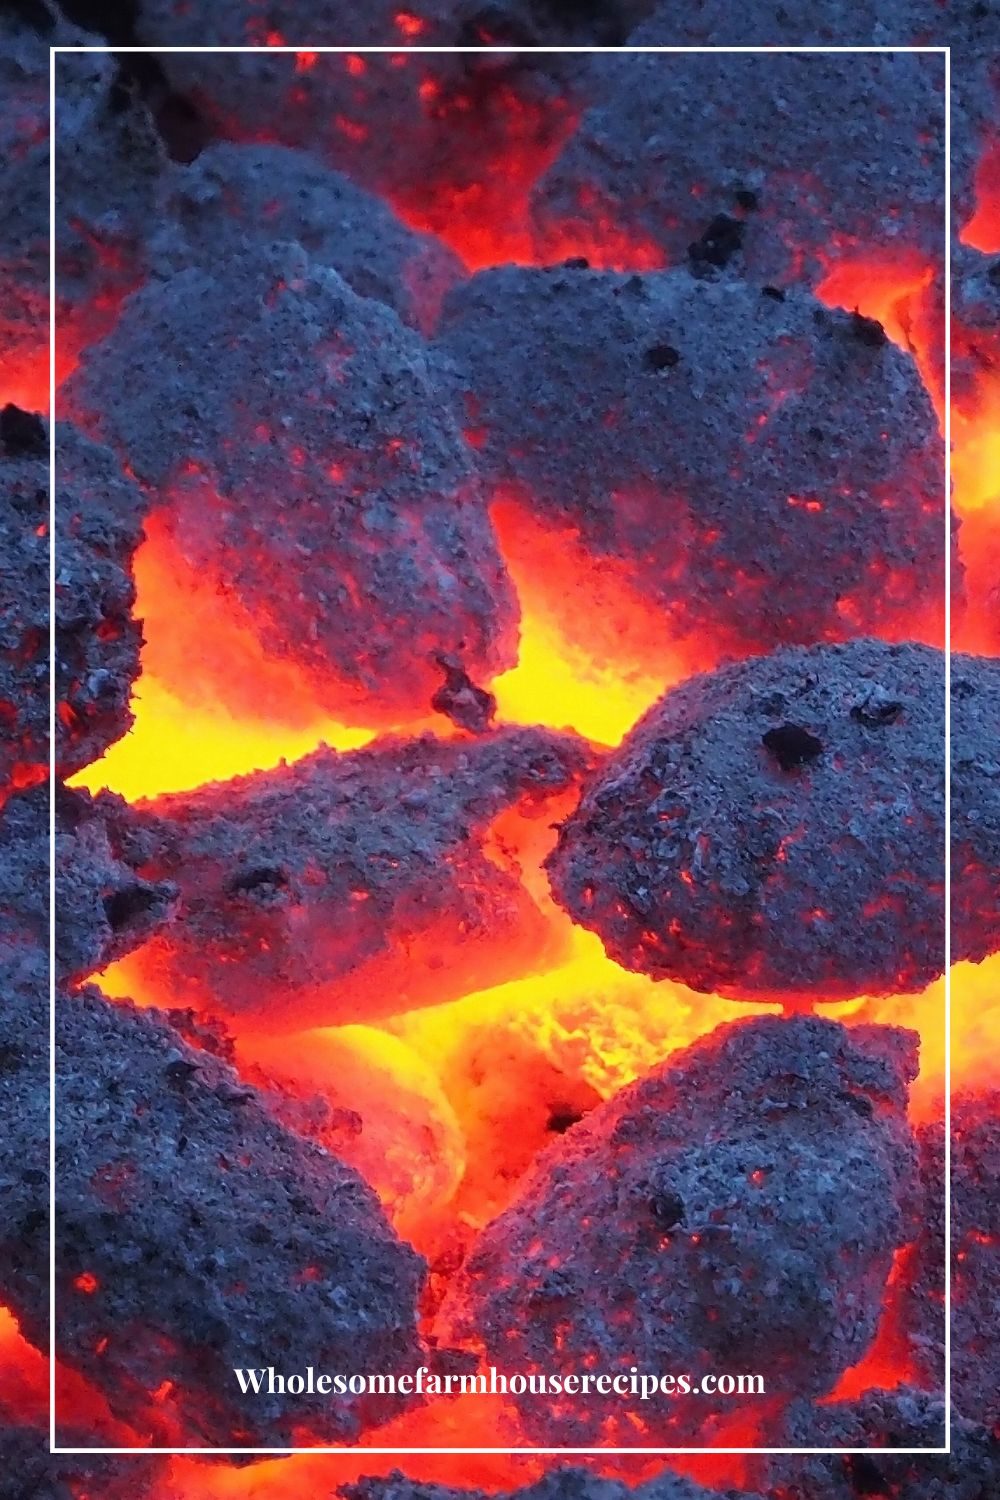 Hot Coals